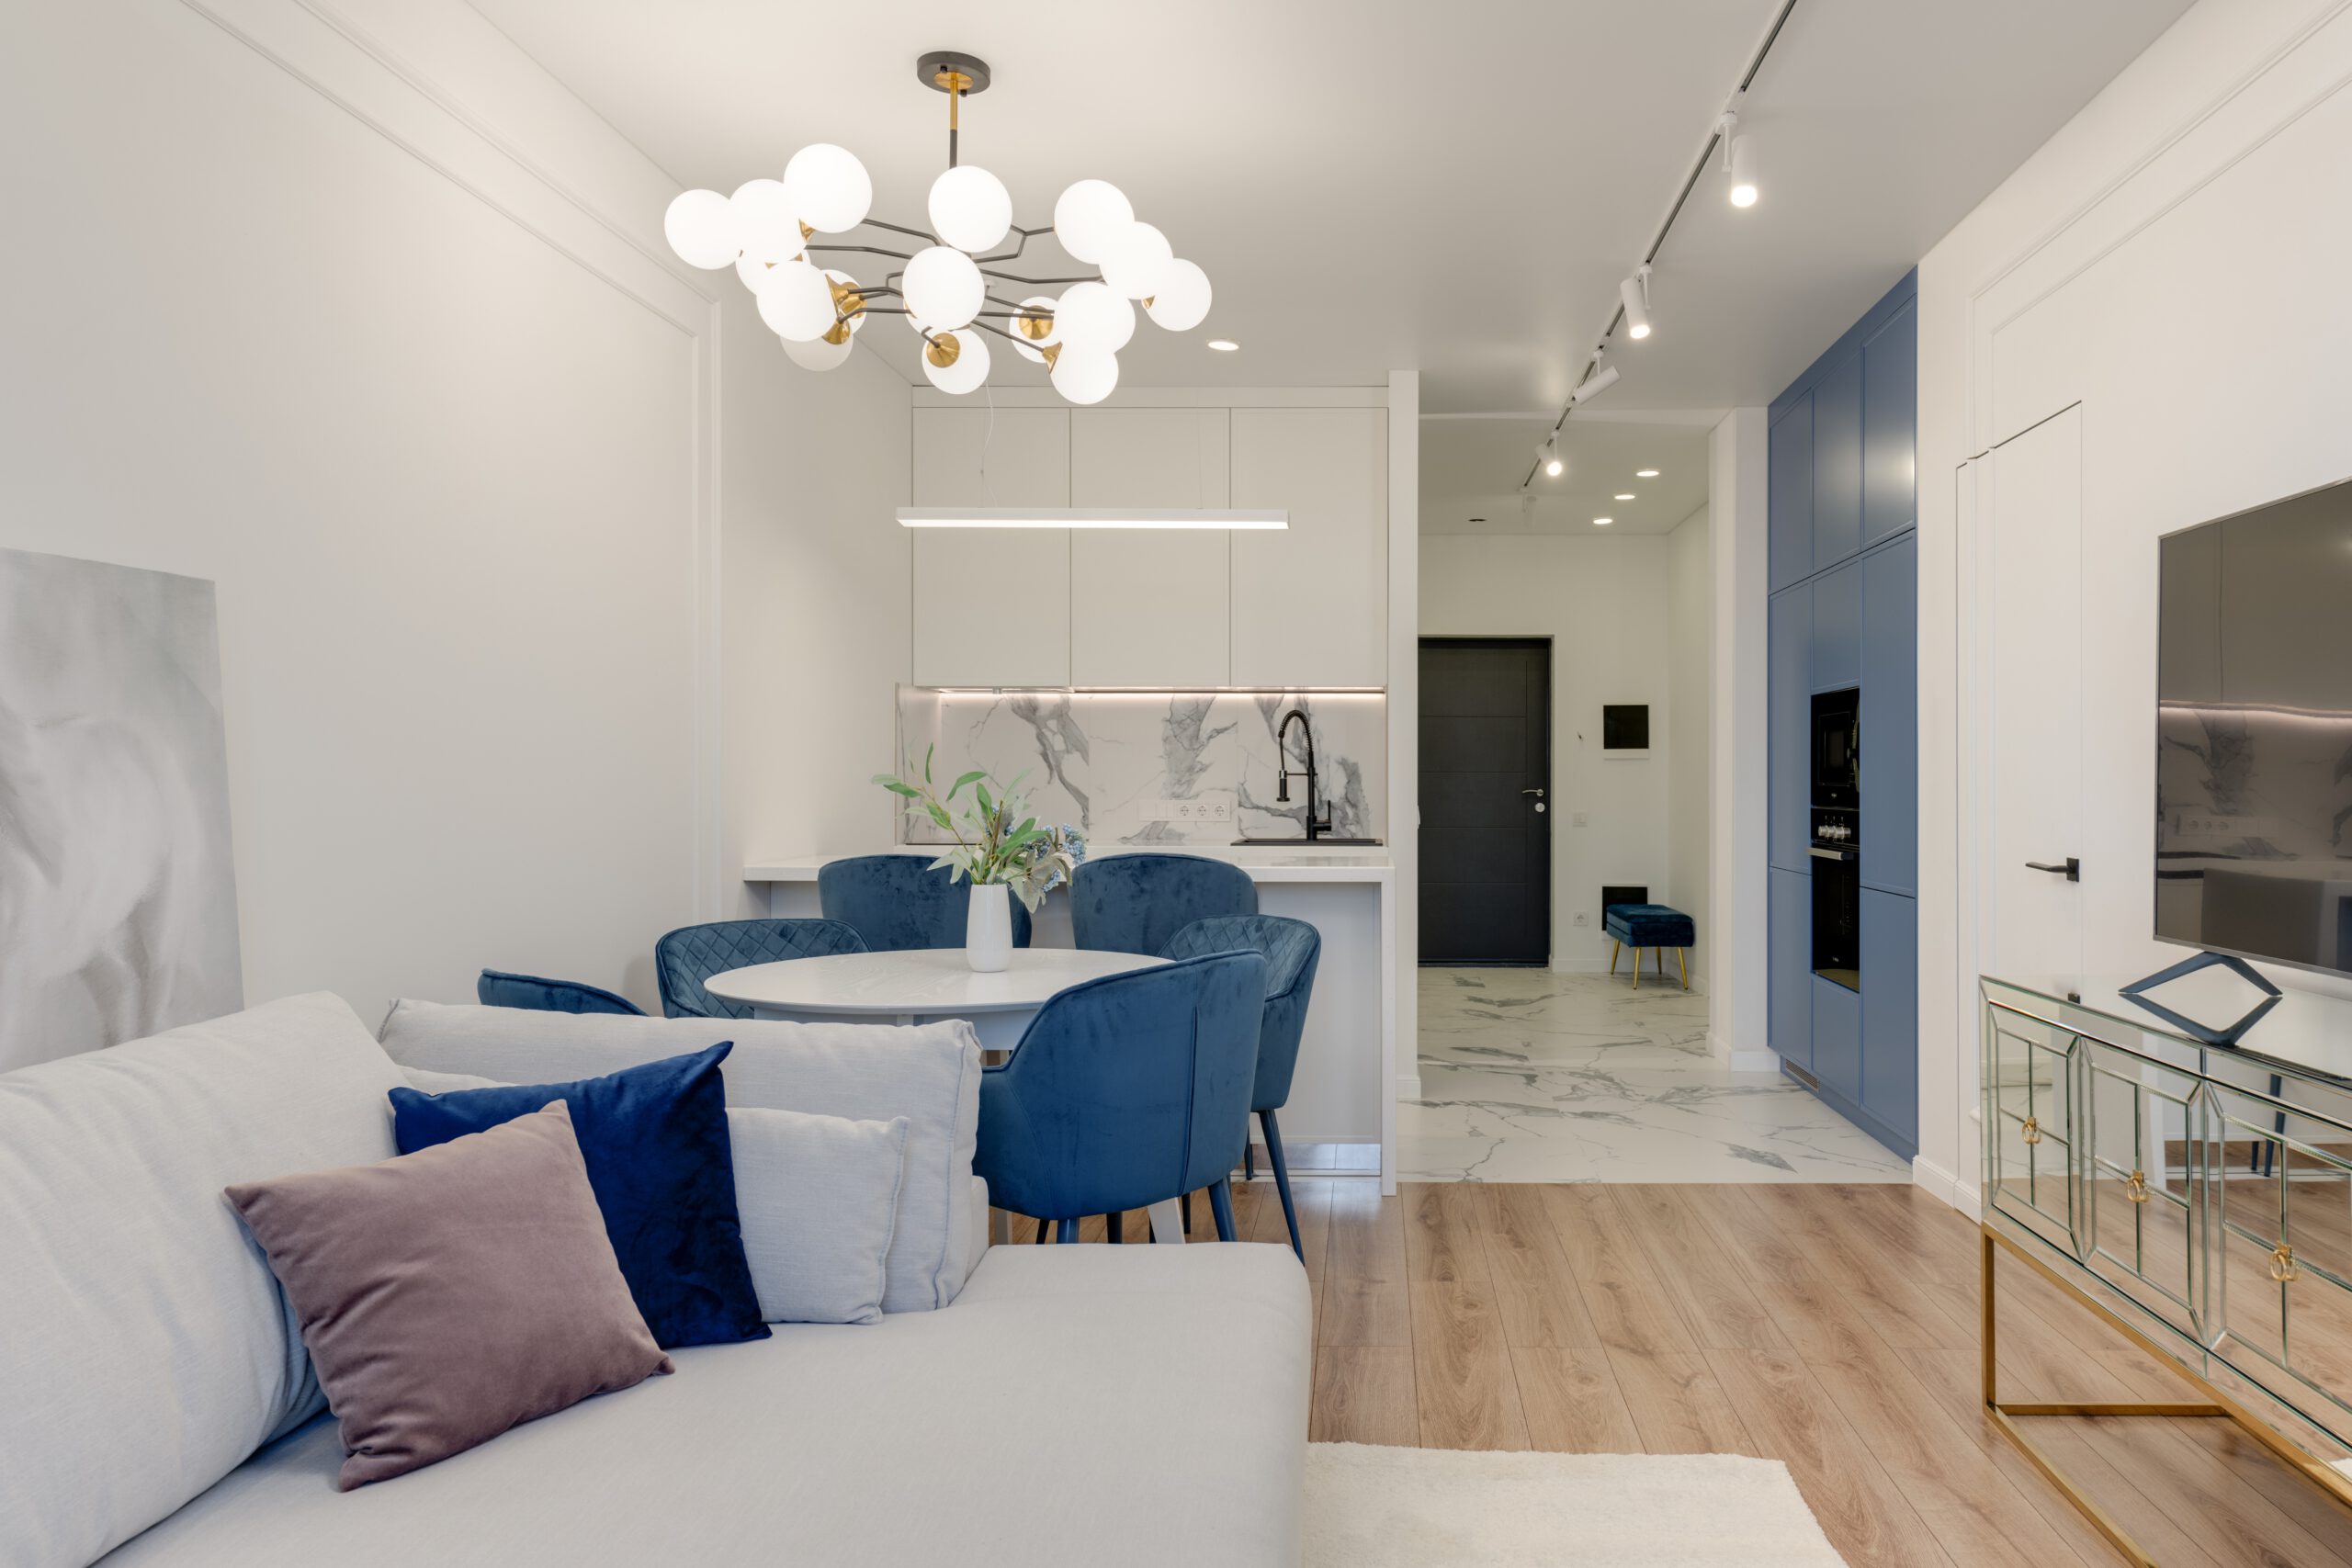 Nowoczesny biało-niebieski salon z aneksem kuchennym w małym mieszkaniu